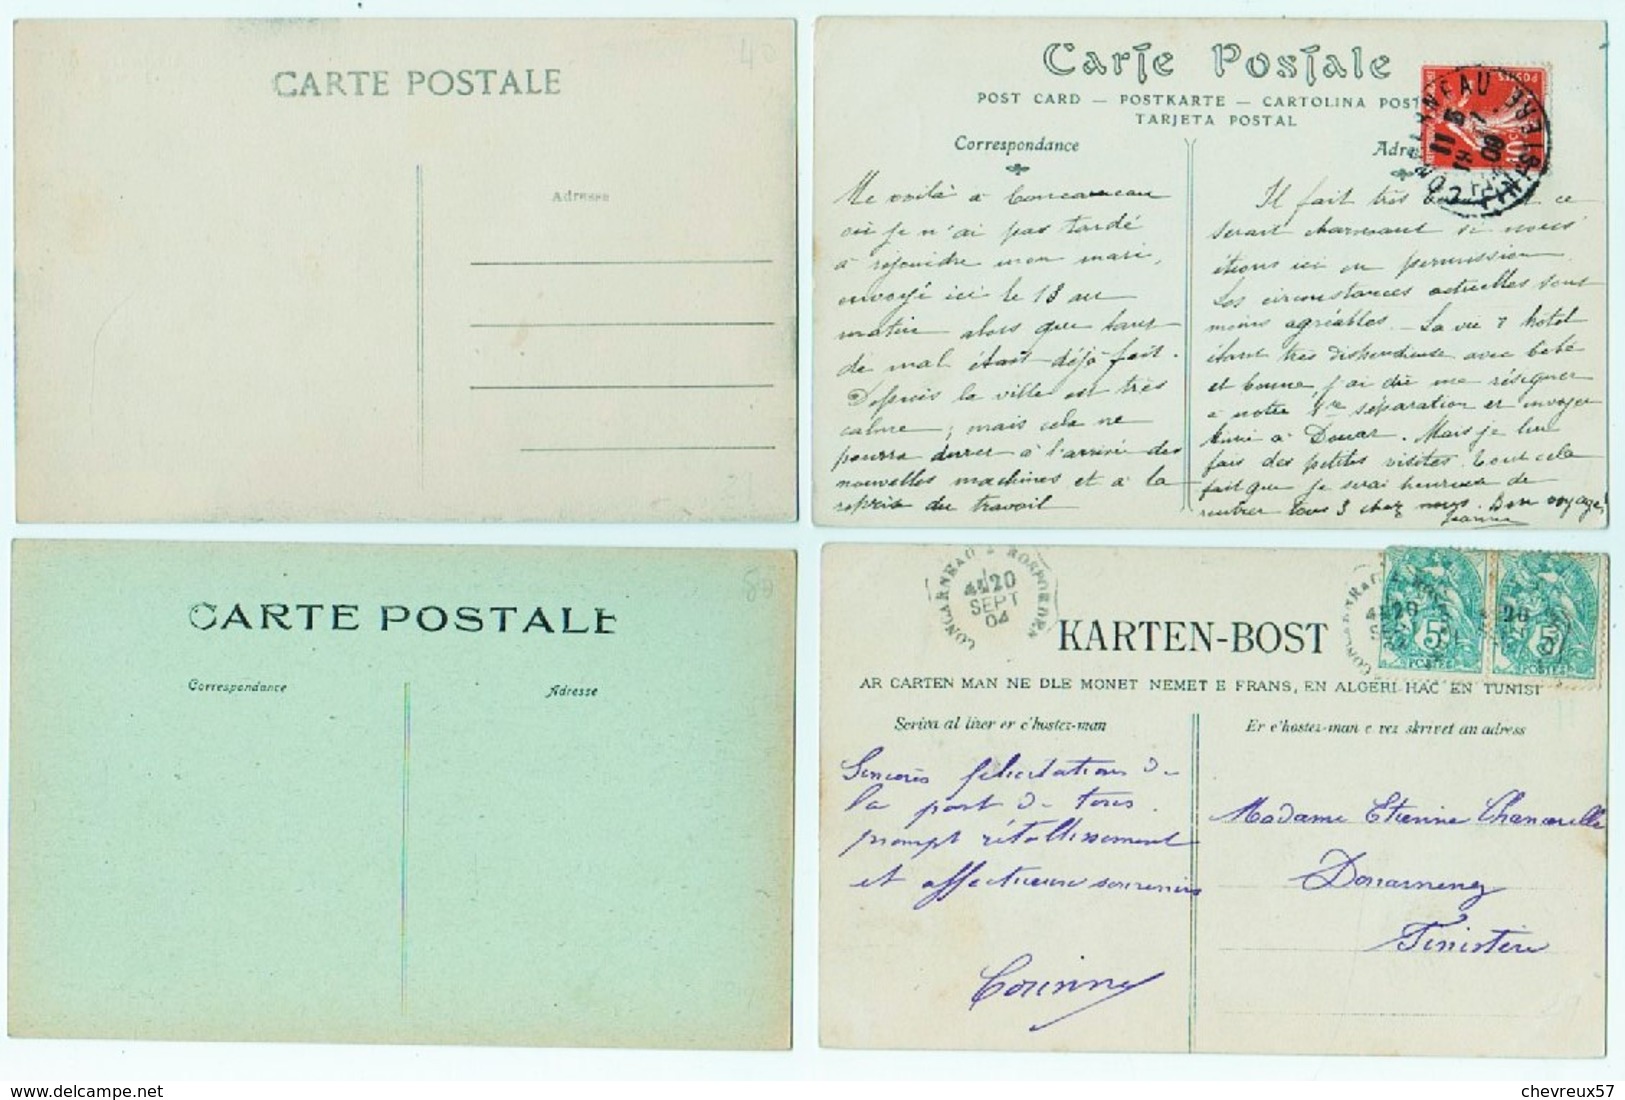 VILLES ET VILLAGES DE FRANCE - LOT 24 - 34 Cartes anciennes et 1 carte lettre- Bretagne -